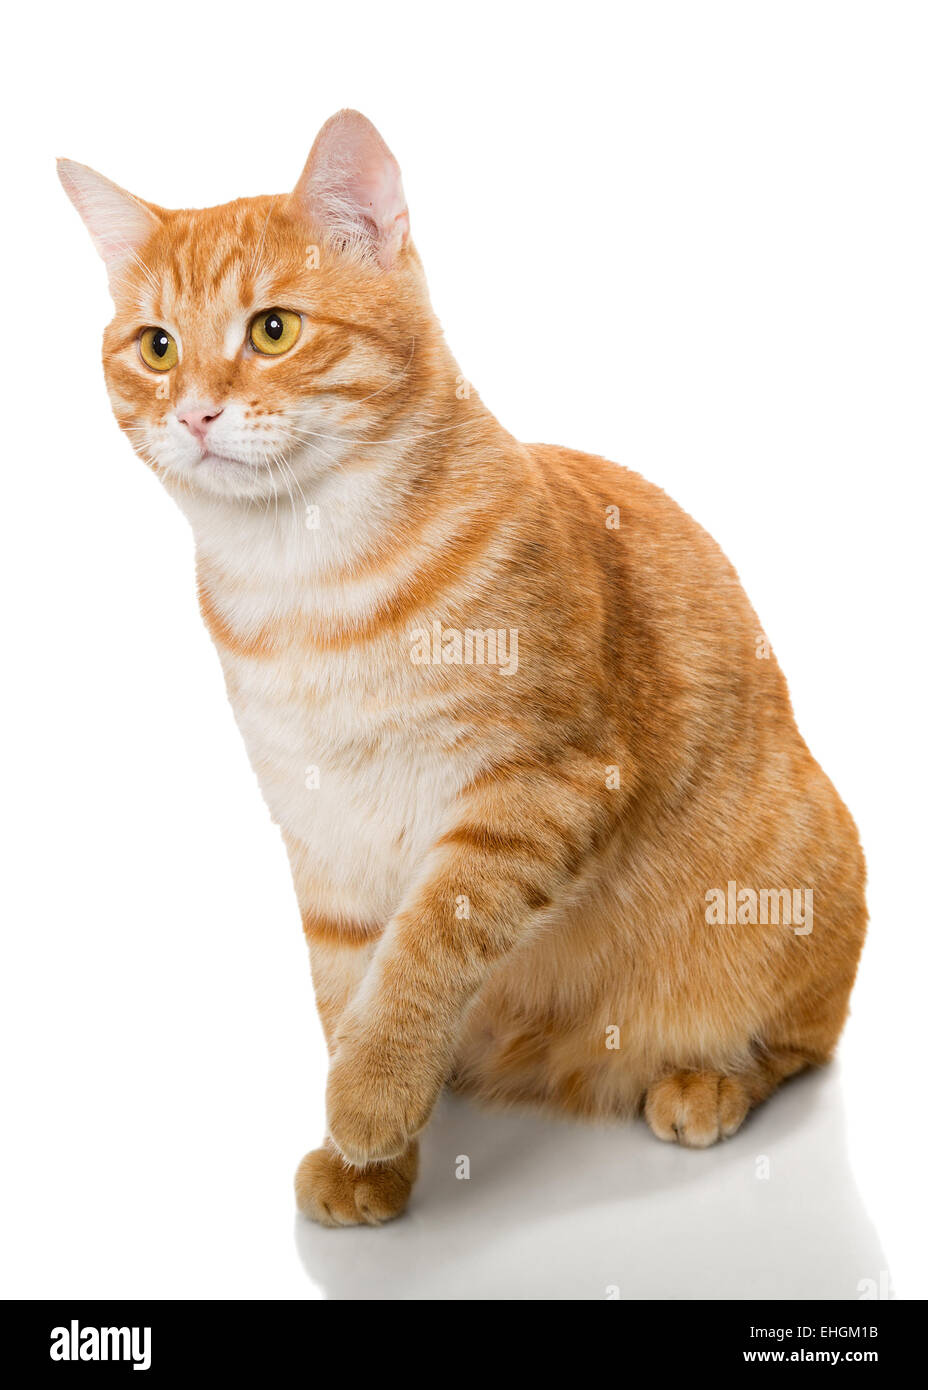 Beau chat orange, isolé sur fond blanc Banque D'Images